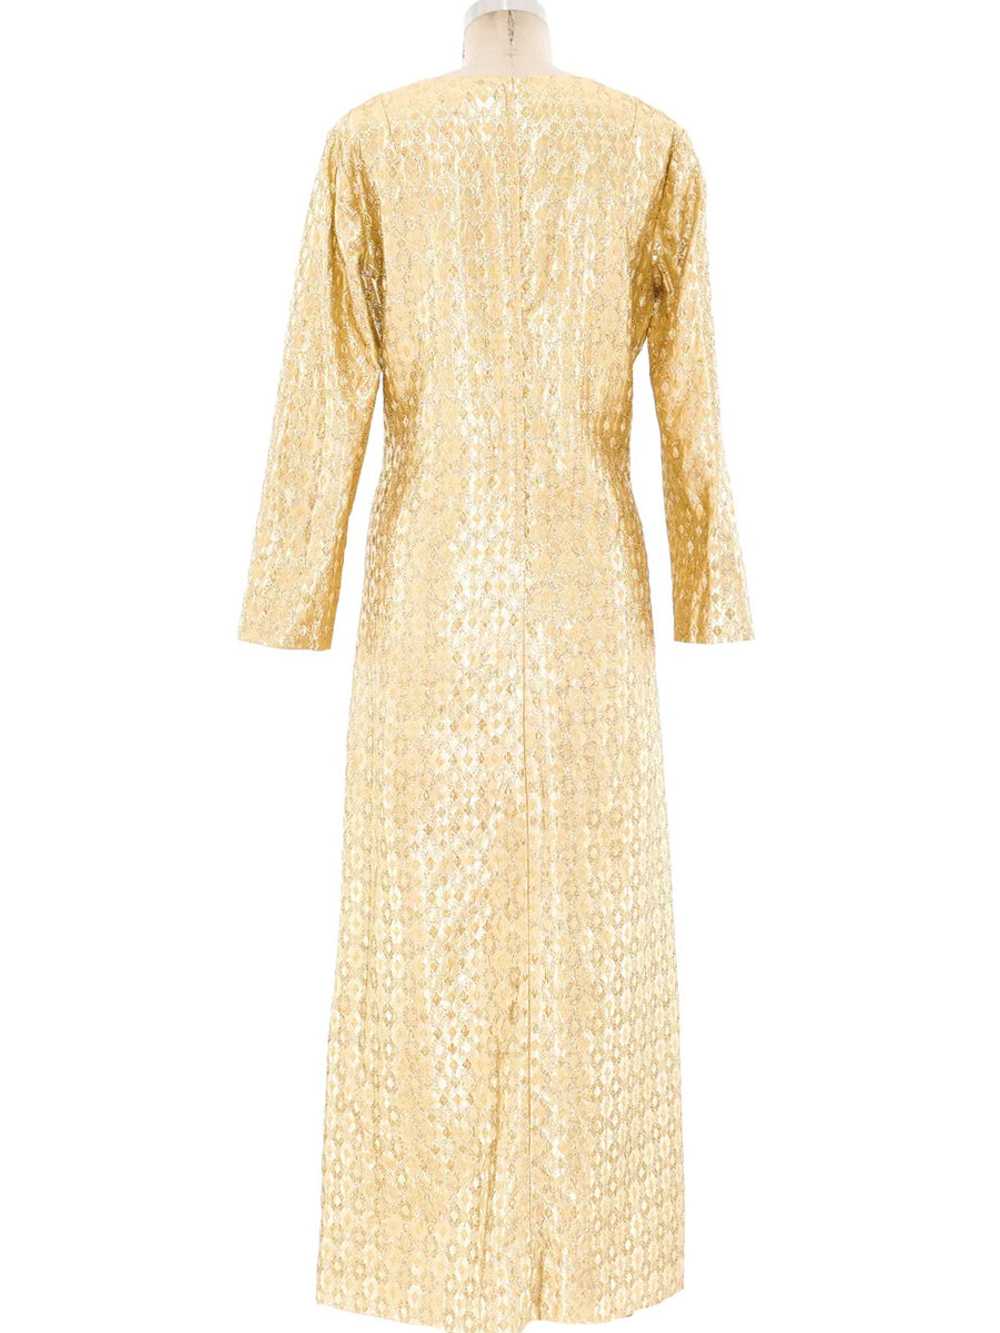 Metallic Gold Lamé Maxi Dress - image 4